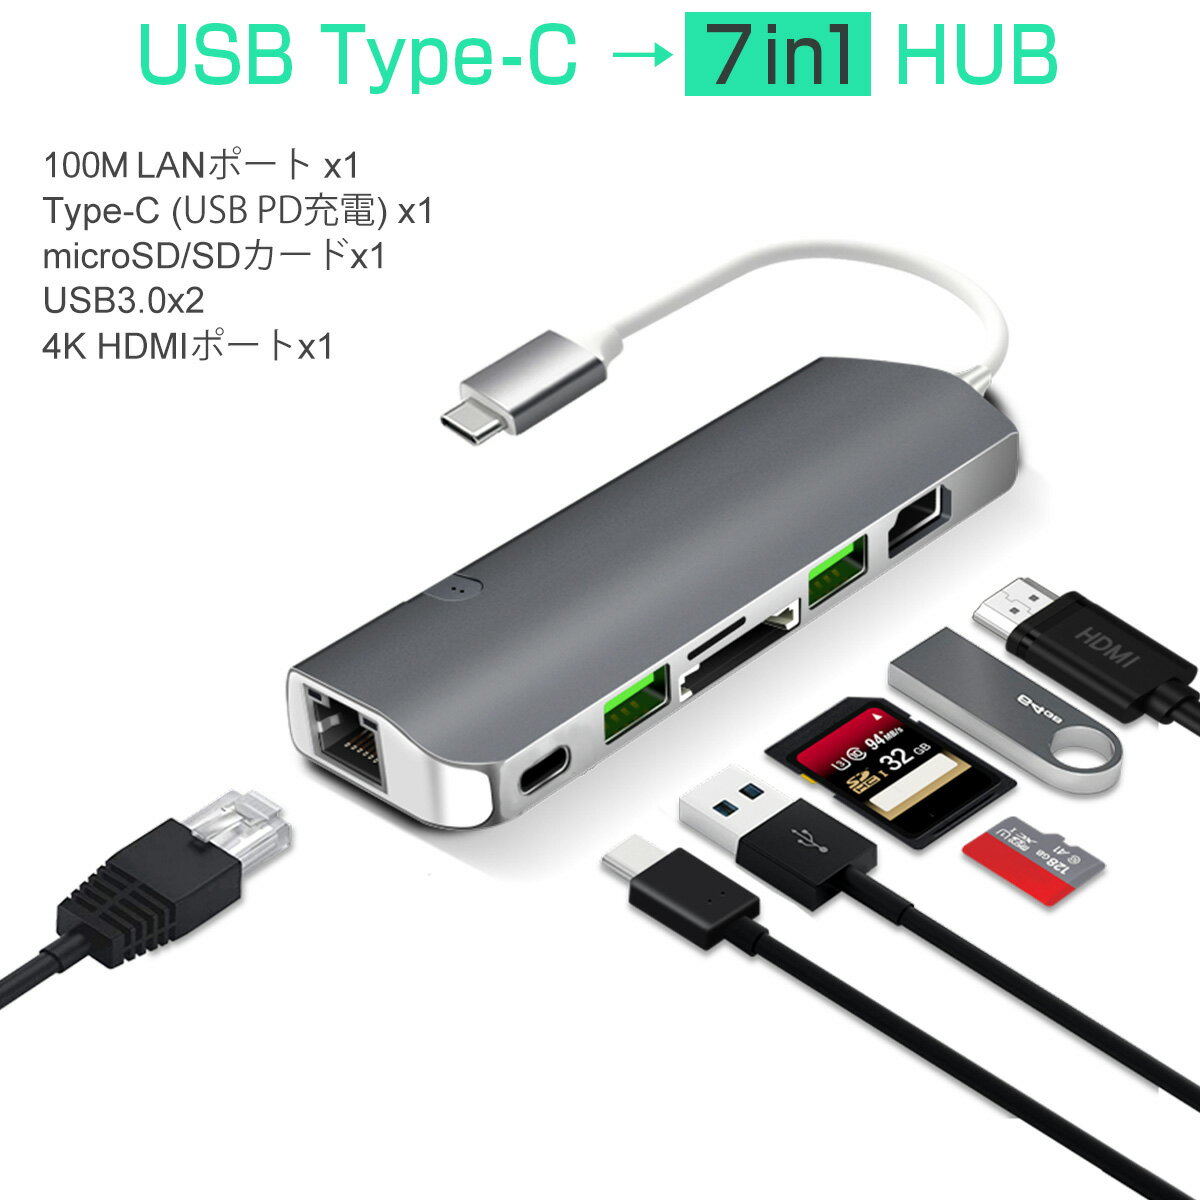 USB Type-C ハブ 7in1 USB3.0x2 4K